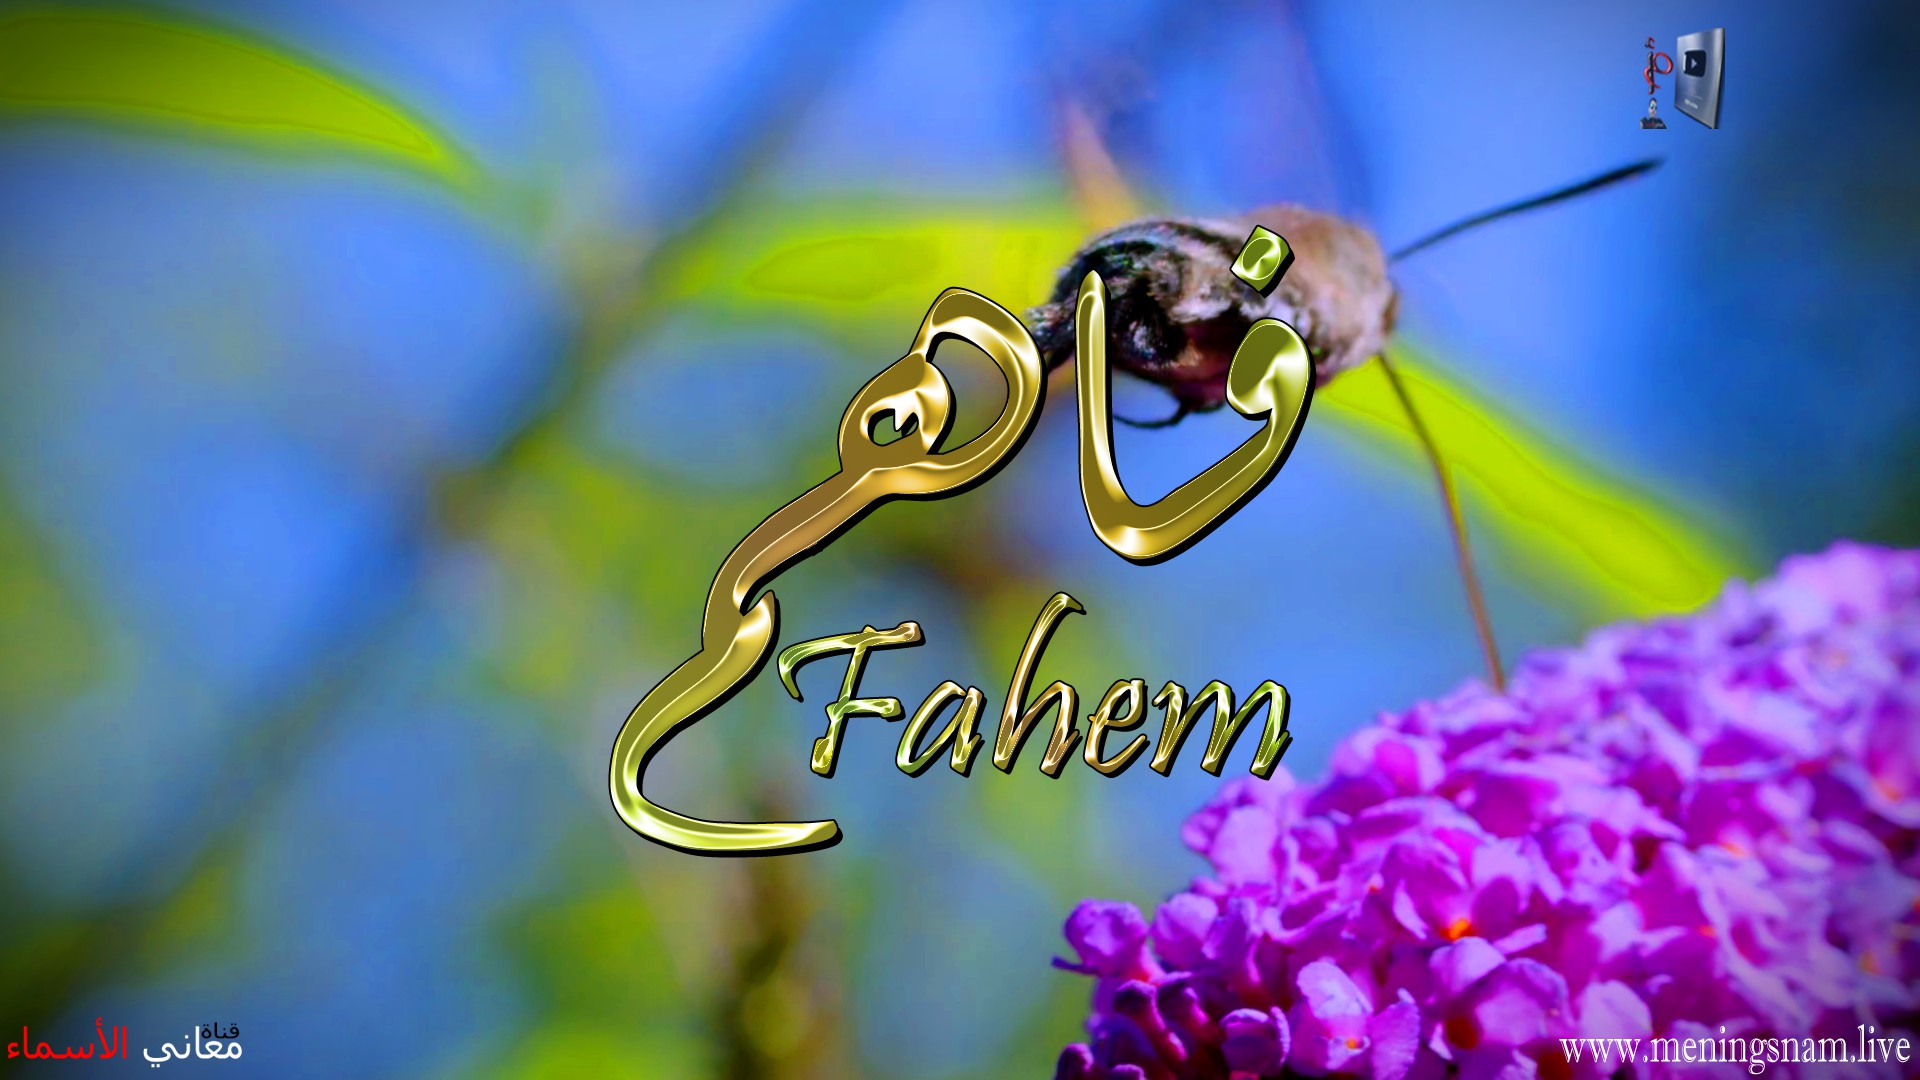 معنى اسم, فاهم, وصفات, حامل, هذا الاسم, Fahem,